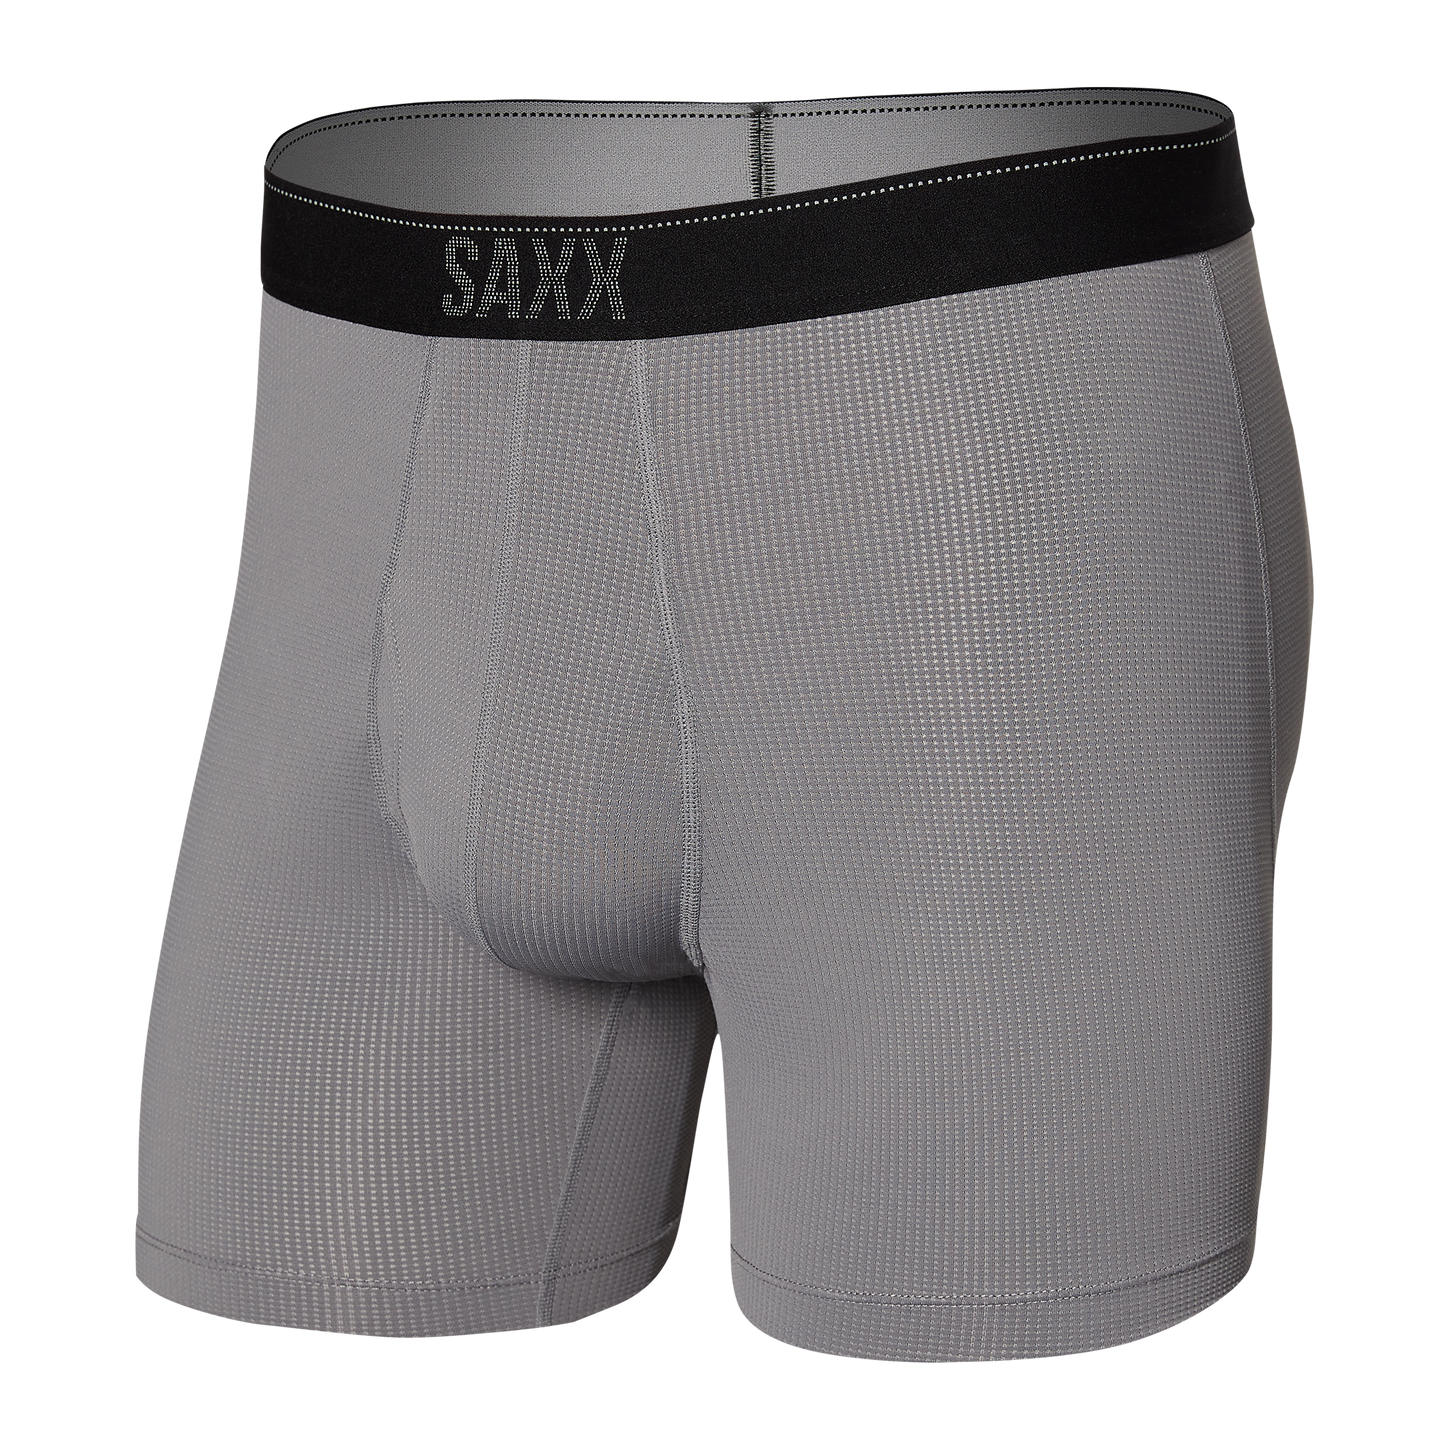 SAXX QUEST Grey Grizzly Grain Underwear